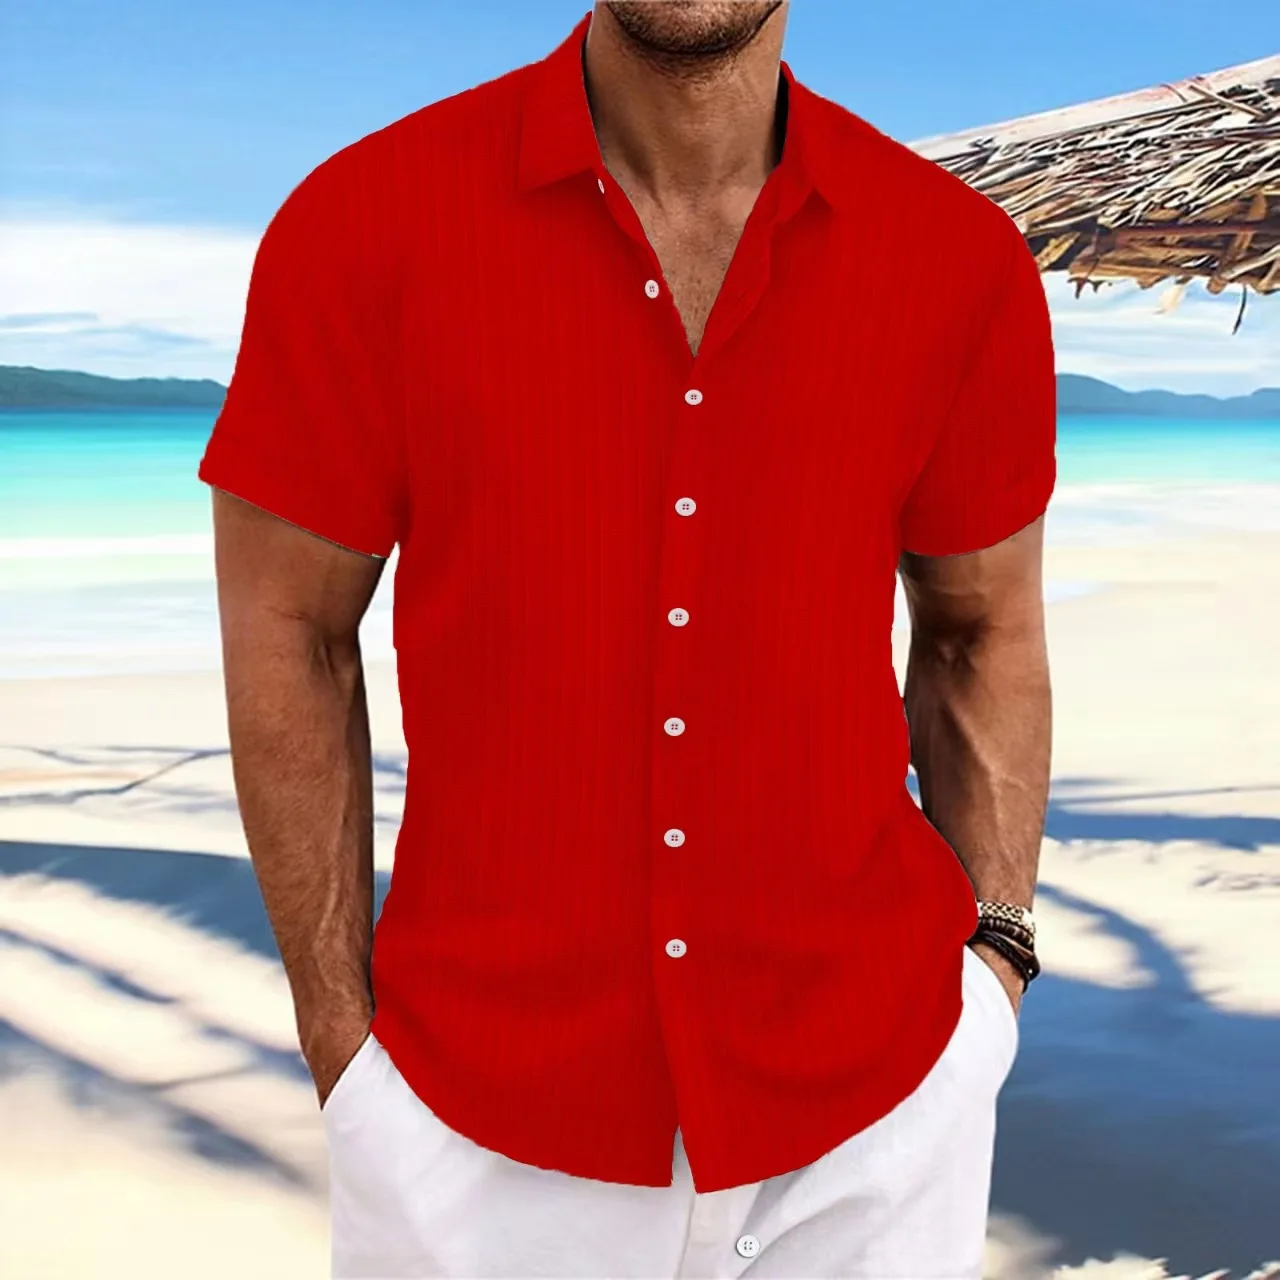 

Рубашка мужская свободного покроя, хлопок, конопляная полоска, жаккард, короткий рукав, Повседневная Удобная пляжная кофта, лето